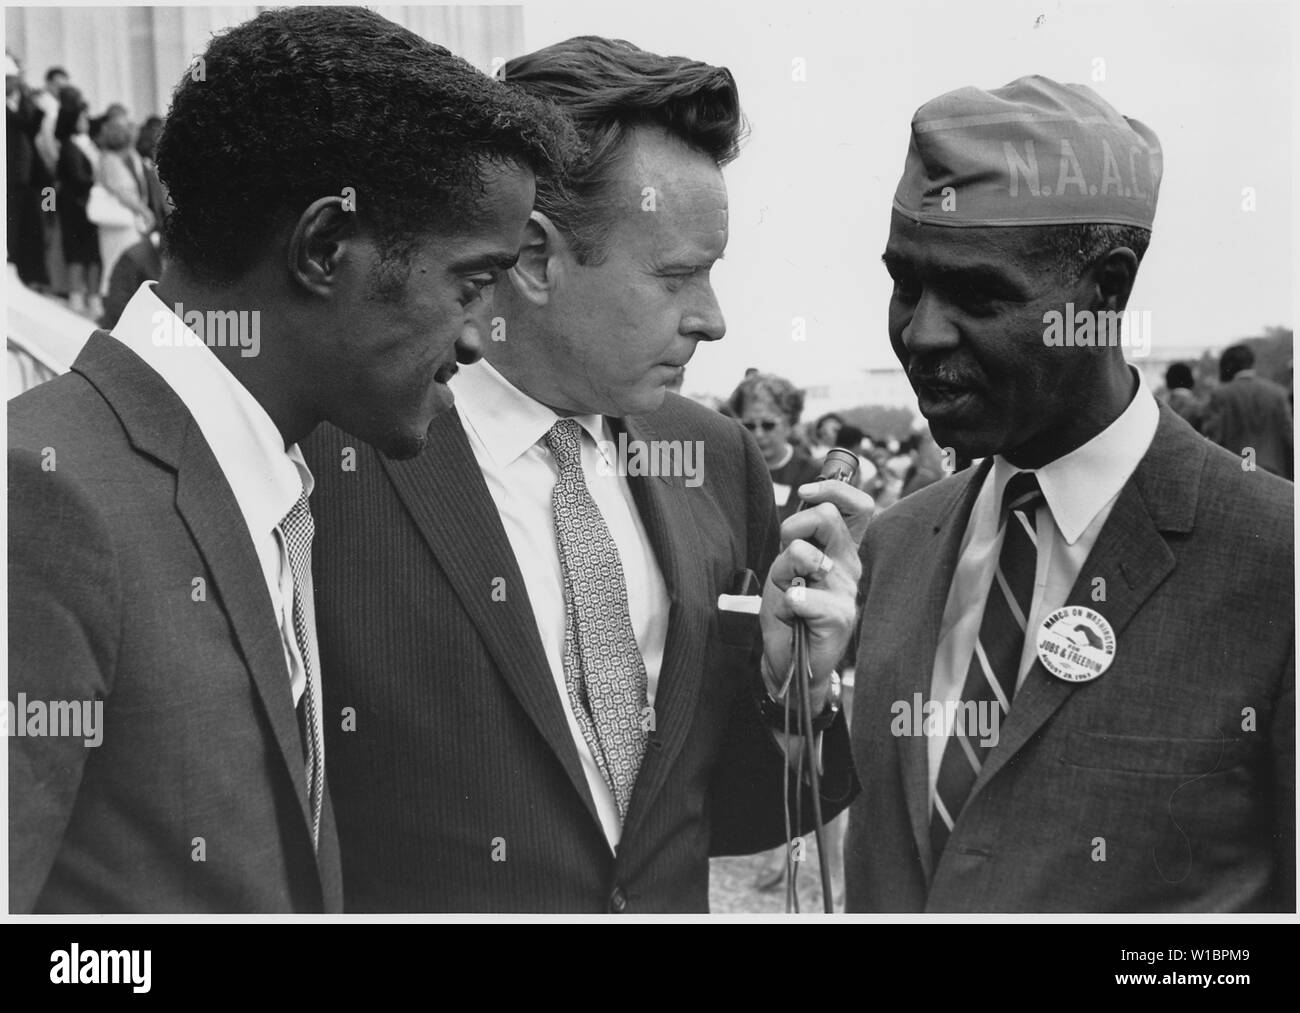 Manifestation à Washington, D.C. [Sammy Davis, Jr., acteur et interprète, avec Roy Wilkins, Secrétaire exécutif de la National Association for the Advancement of Coloured People.] Banque D'Images